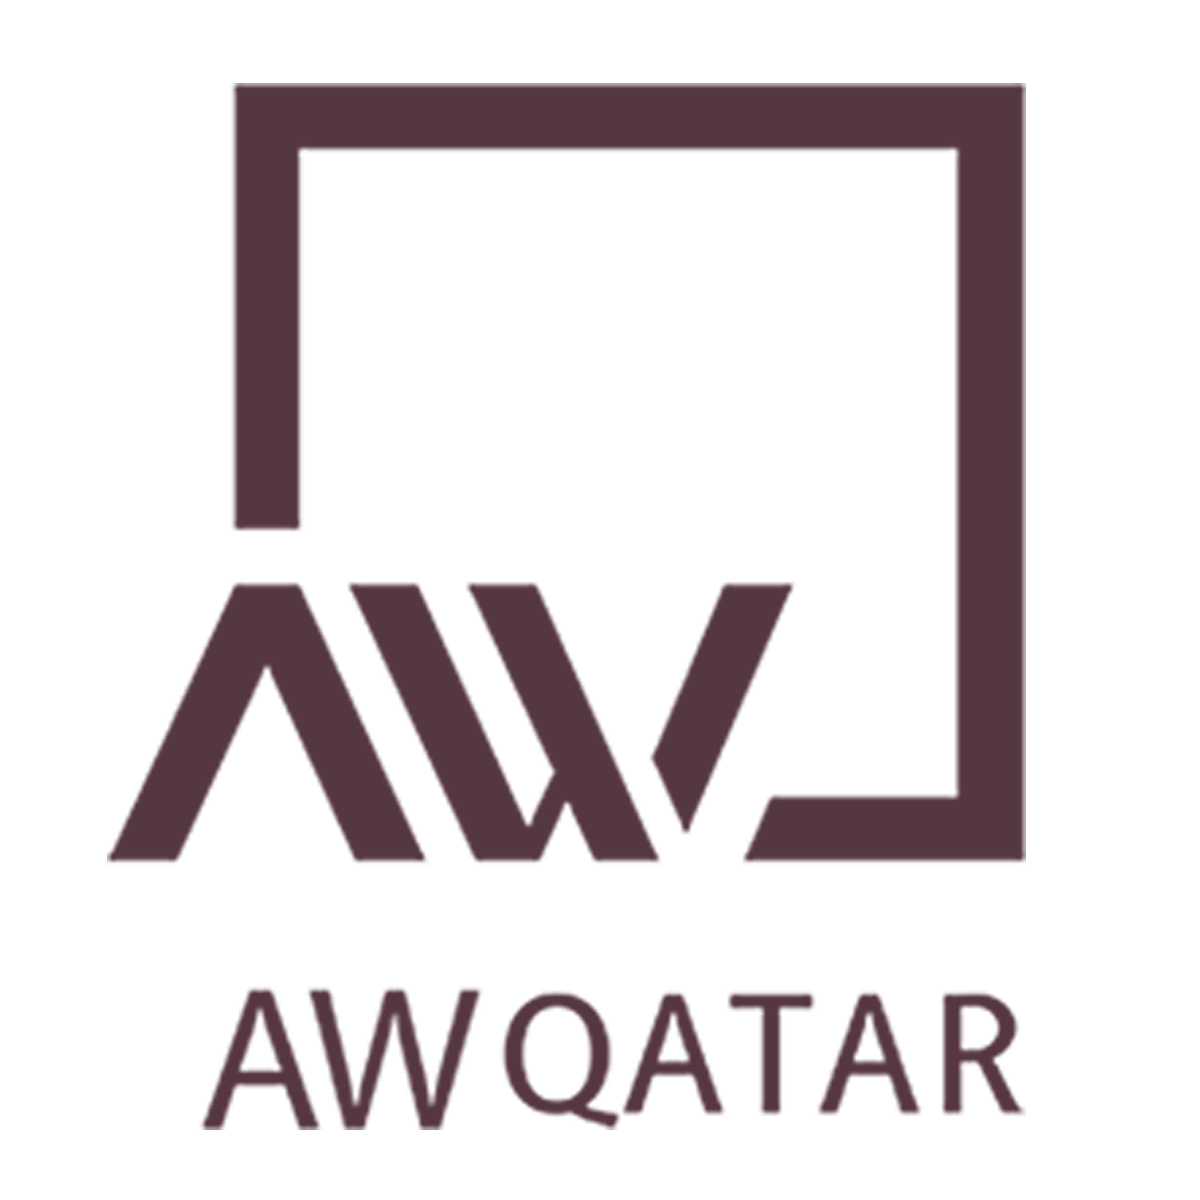 AW Qatar